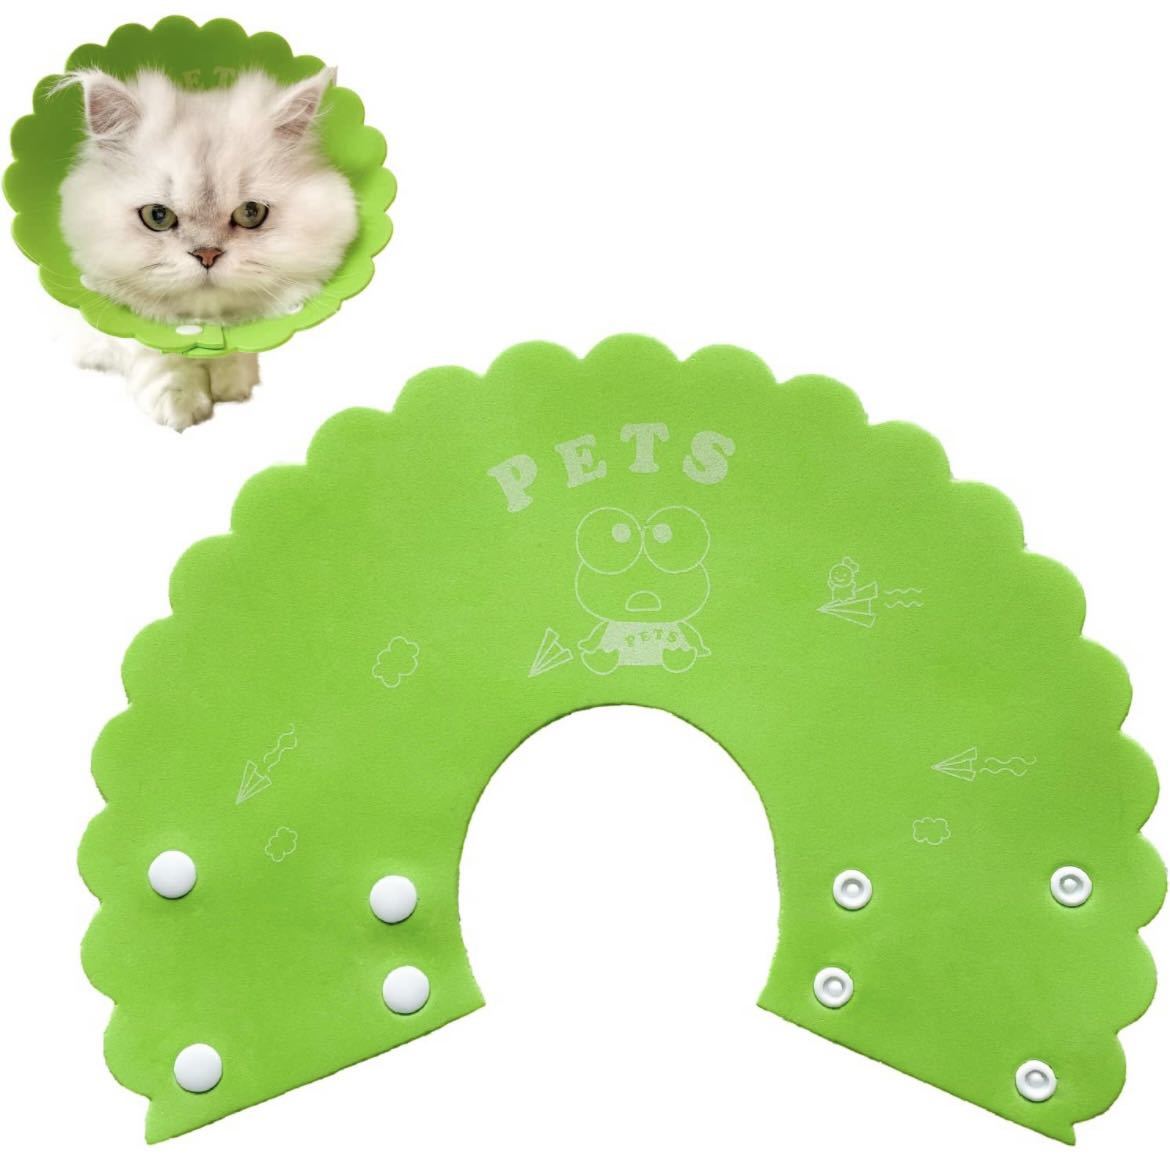  ветеринарный воротник кошка собака легкий soft царапина облизывание предотвращение установка и снятие простой кнопка тип ( лягушка 